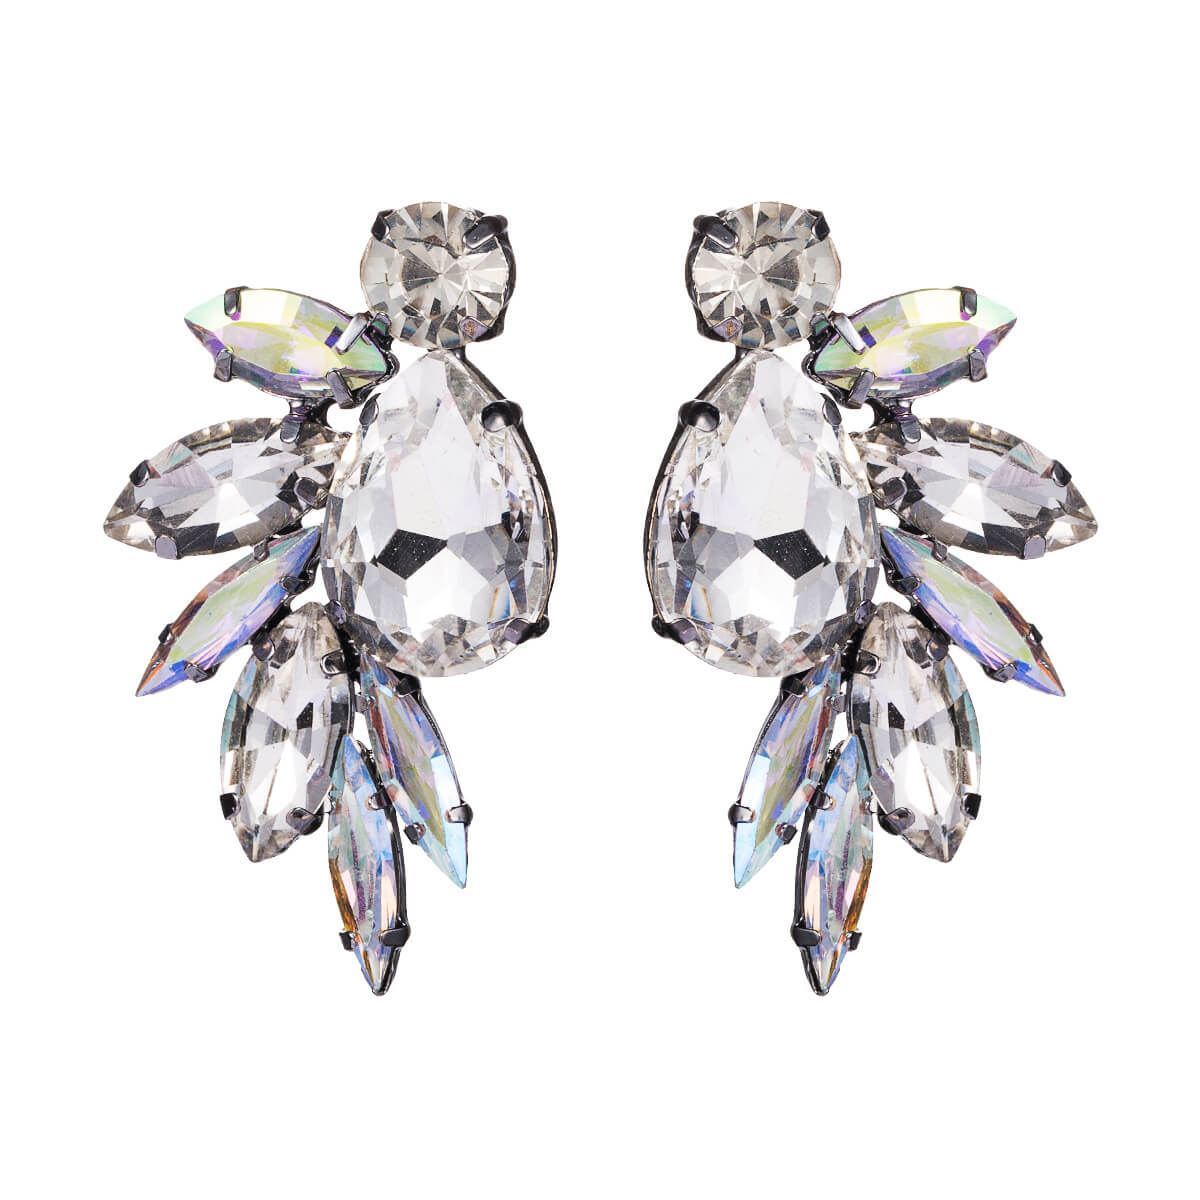 Rhinestone and Diamante Cluster Stud Earrings